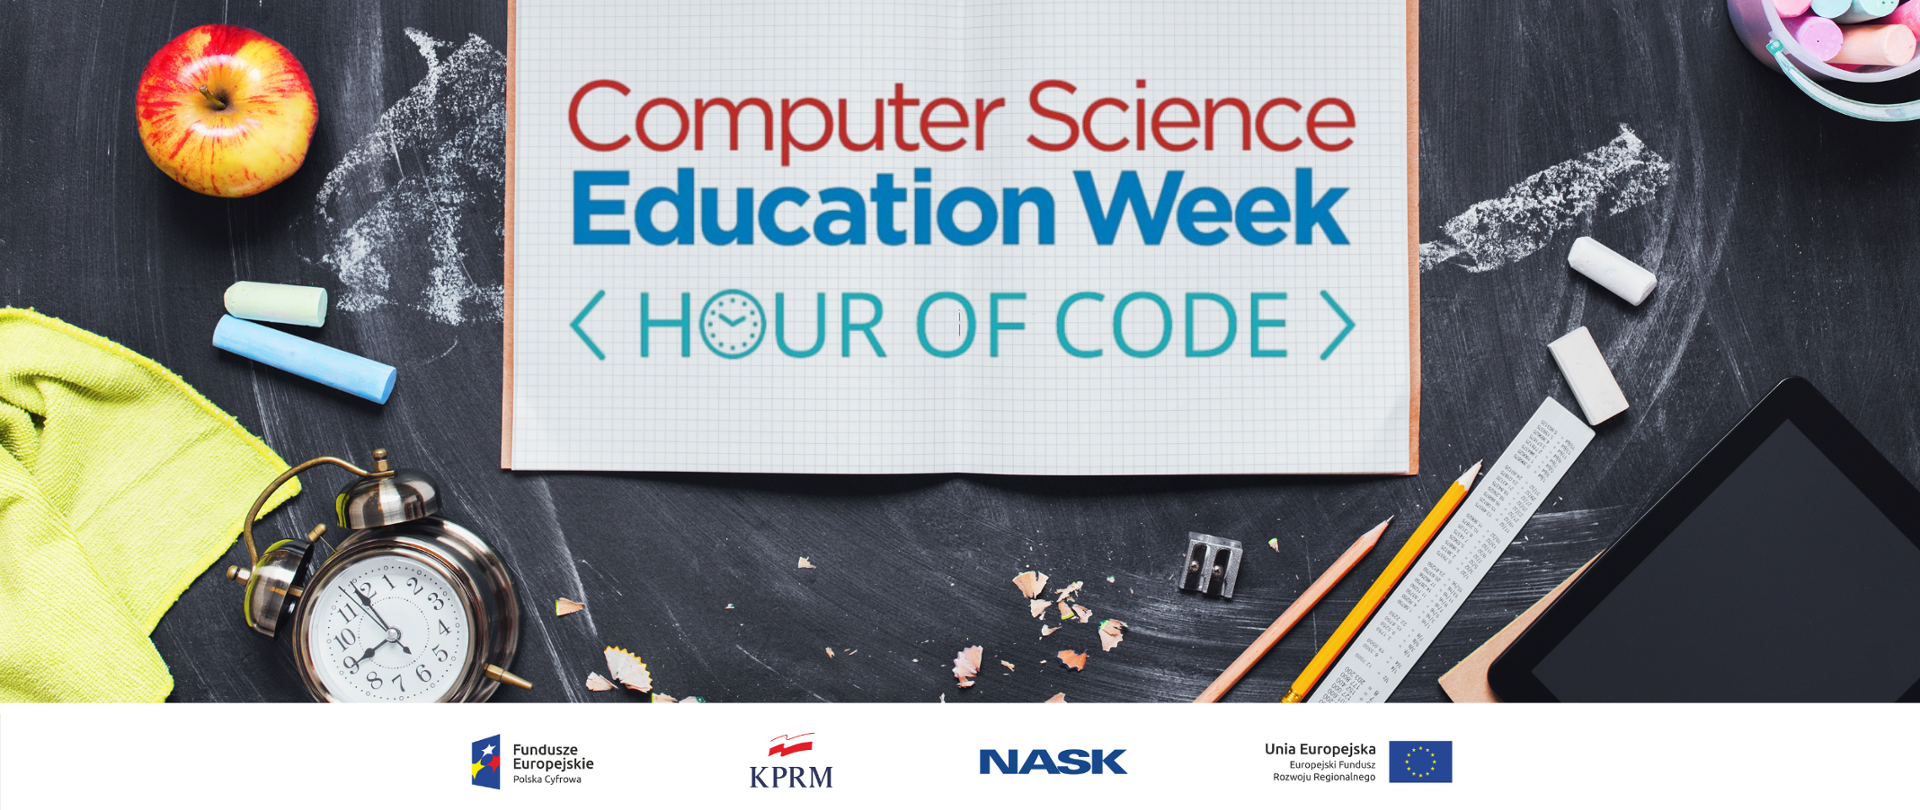 Logotypy Fundusze Europejskie, KPRM, NASK i Unia Europejska. Tablica szkolna, na niej zegar, jabłko, ścierka, kreda, ołówki i linijka. Na środku zeszyt i napis "Computer Science Education Week hour of code".